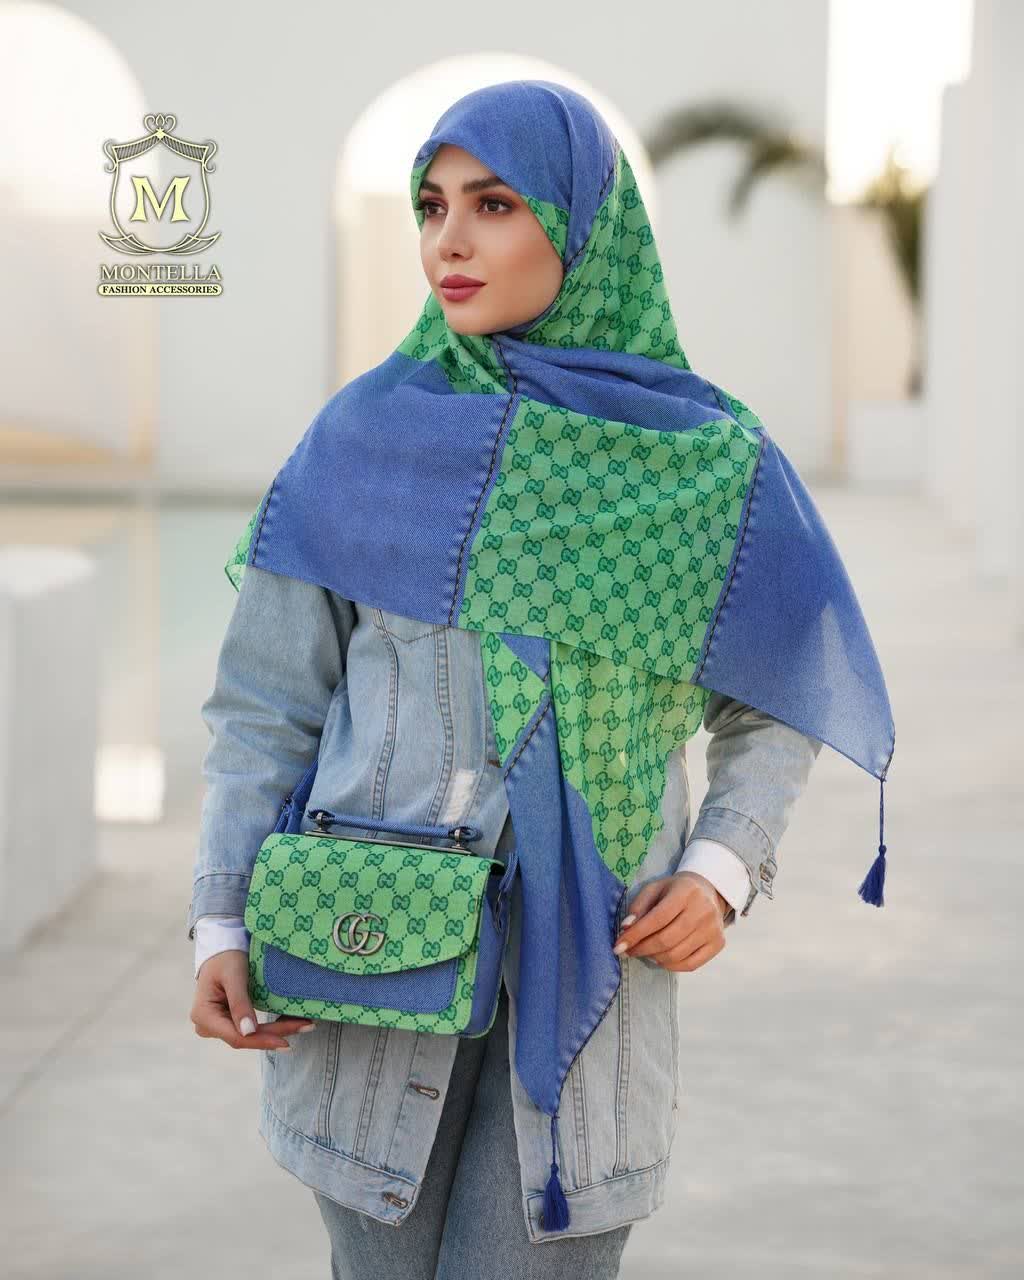 ست کیف و روسری زنانه طرح گوچی رنگ جین سبز با کیف دسته چرمی کیفیت عالی با ارسال رایگان کد mo494